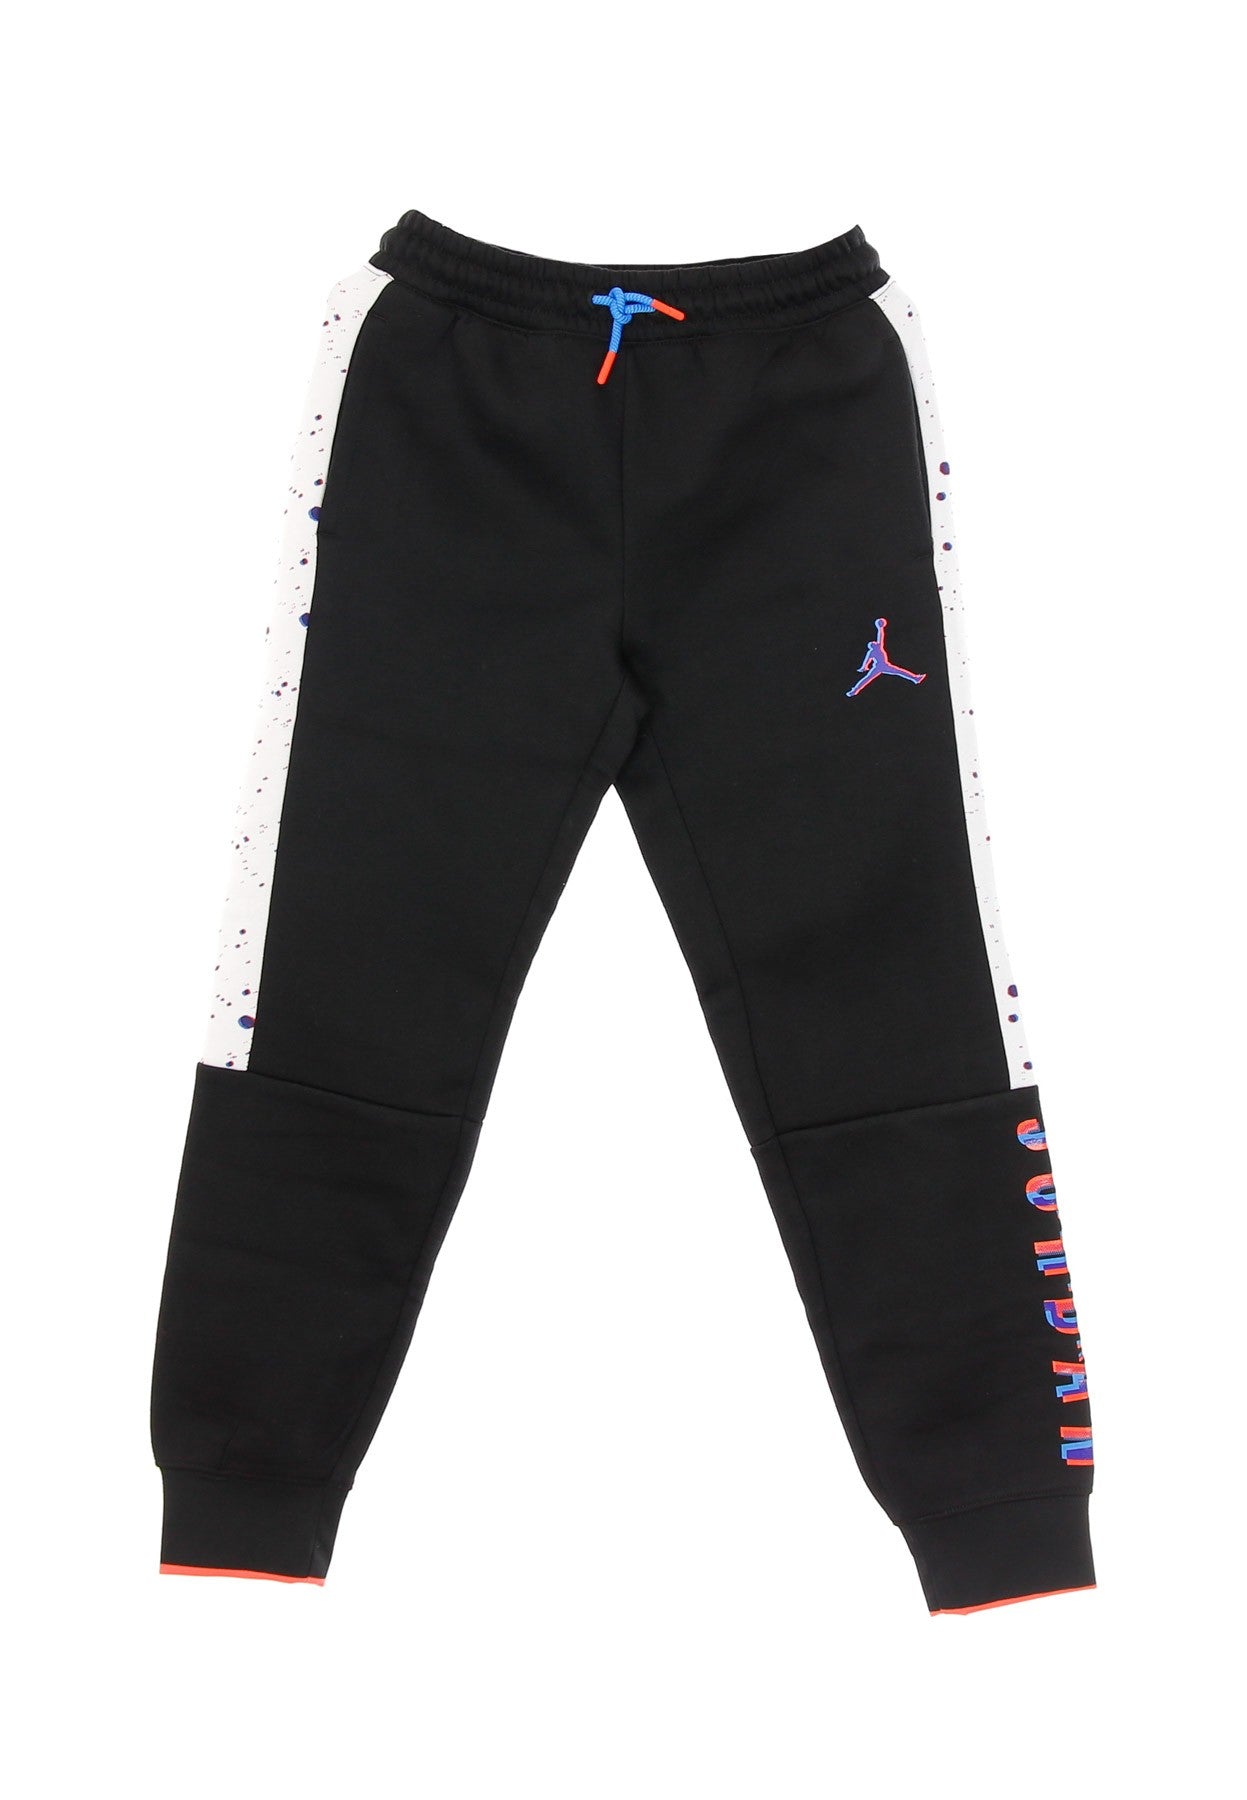 Space Glitch Fleece Pant Tracksuit Pants Black/cement